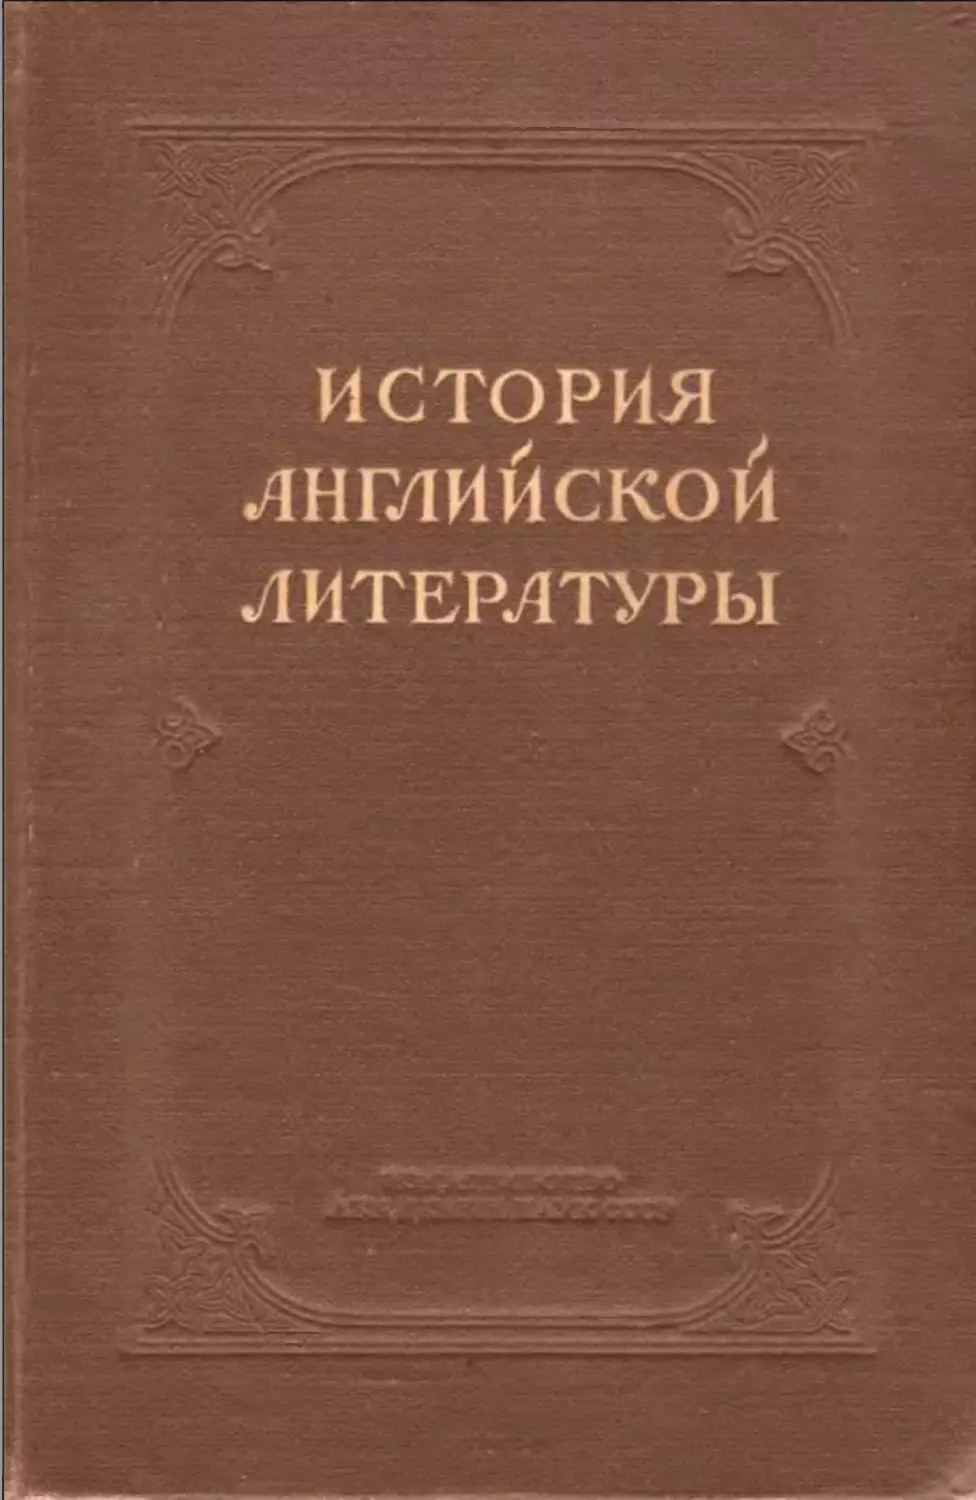 Анисимов И.И. и др. - История английской литературы. Т. I-2.